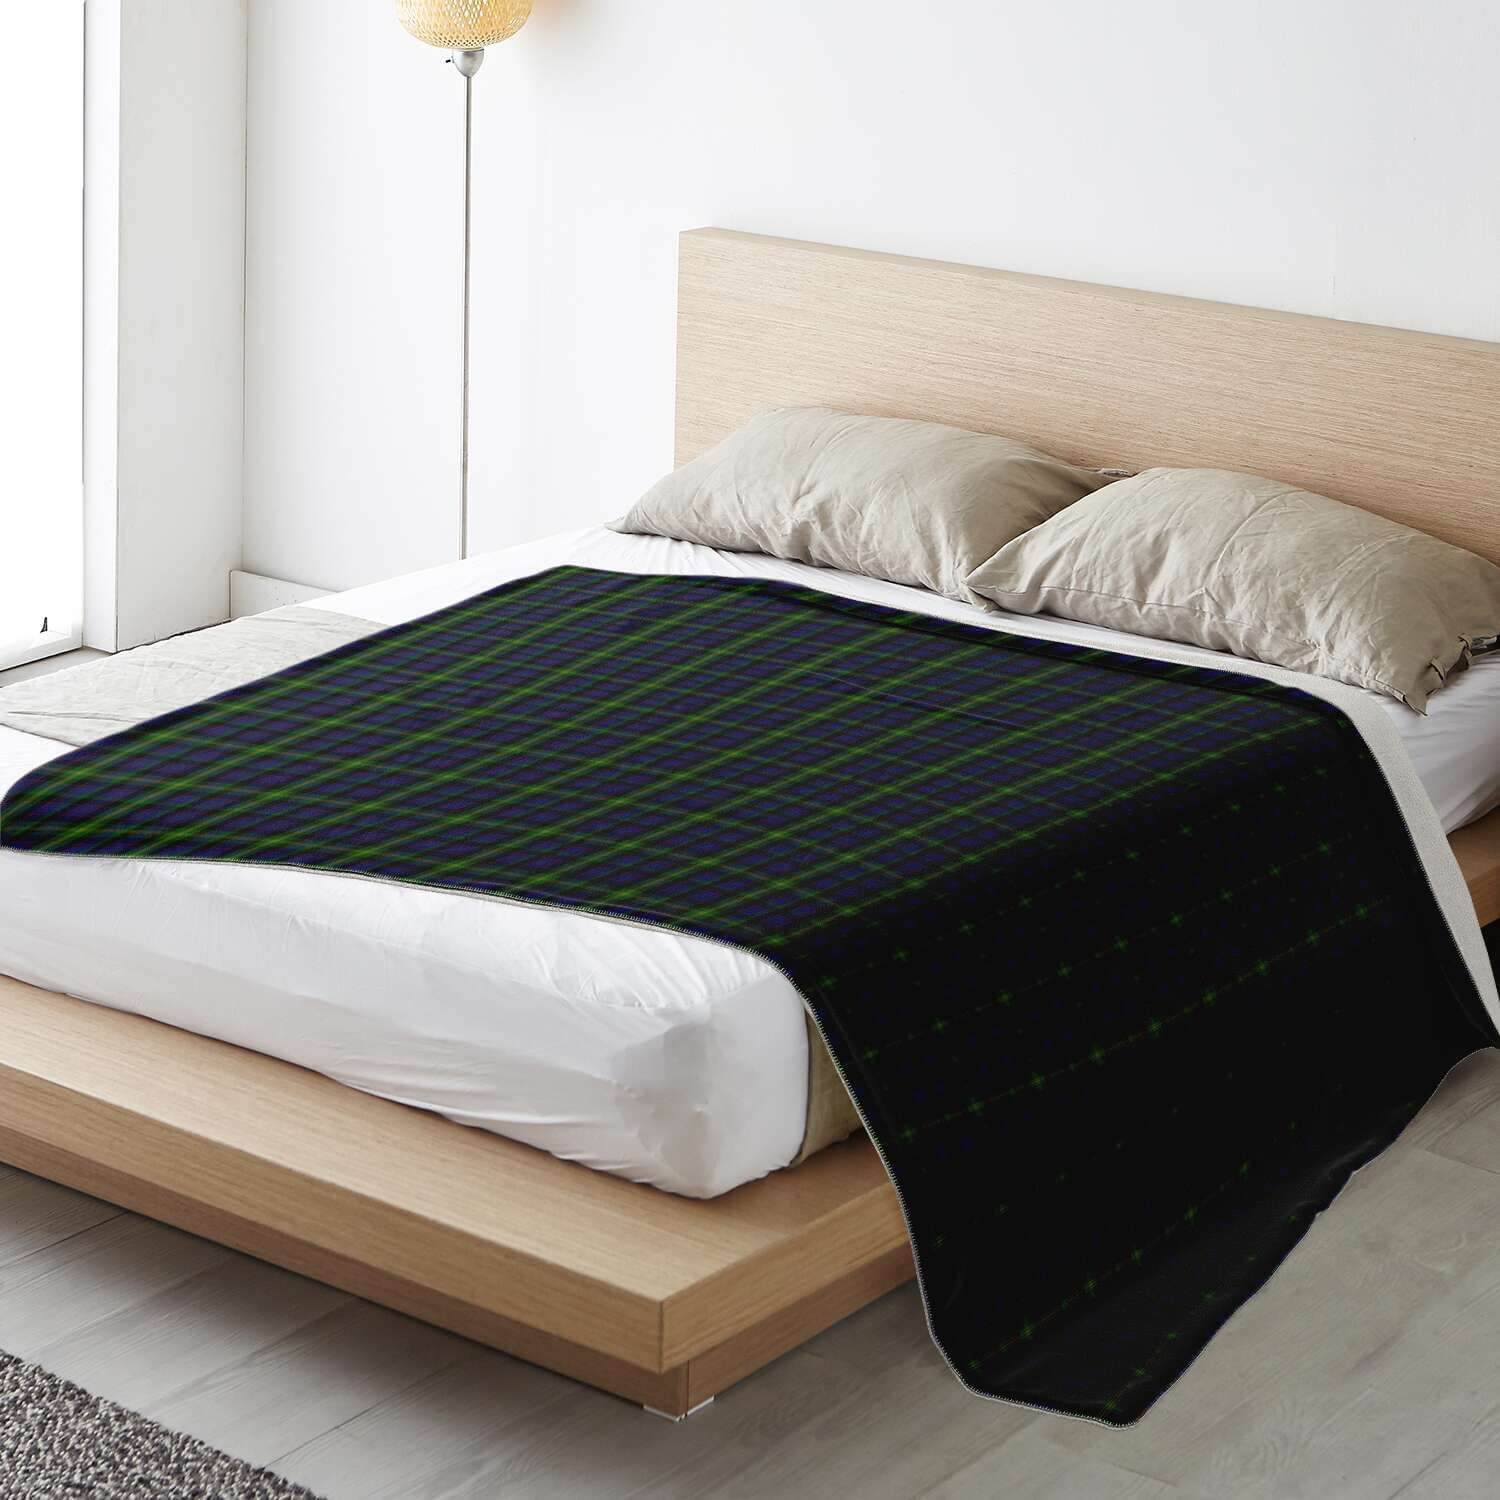 Watson-Tartan-Microfleece-blanket_horizontal_lifestyle-bedextralarge